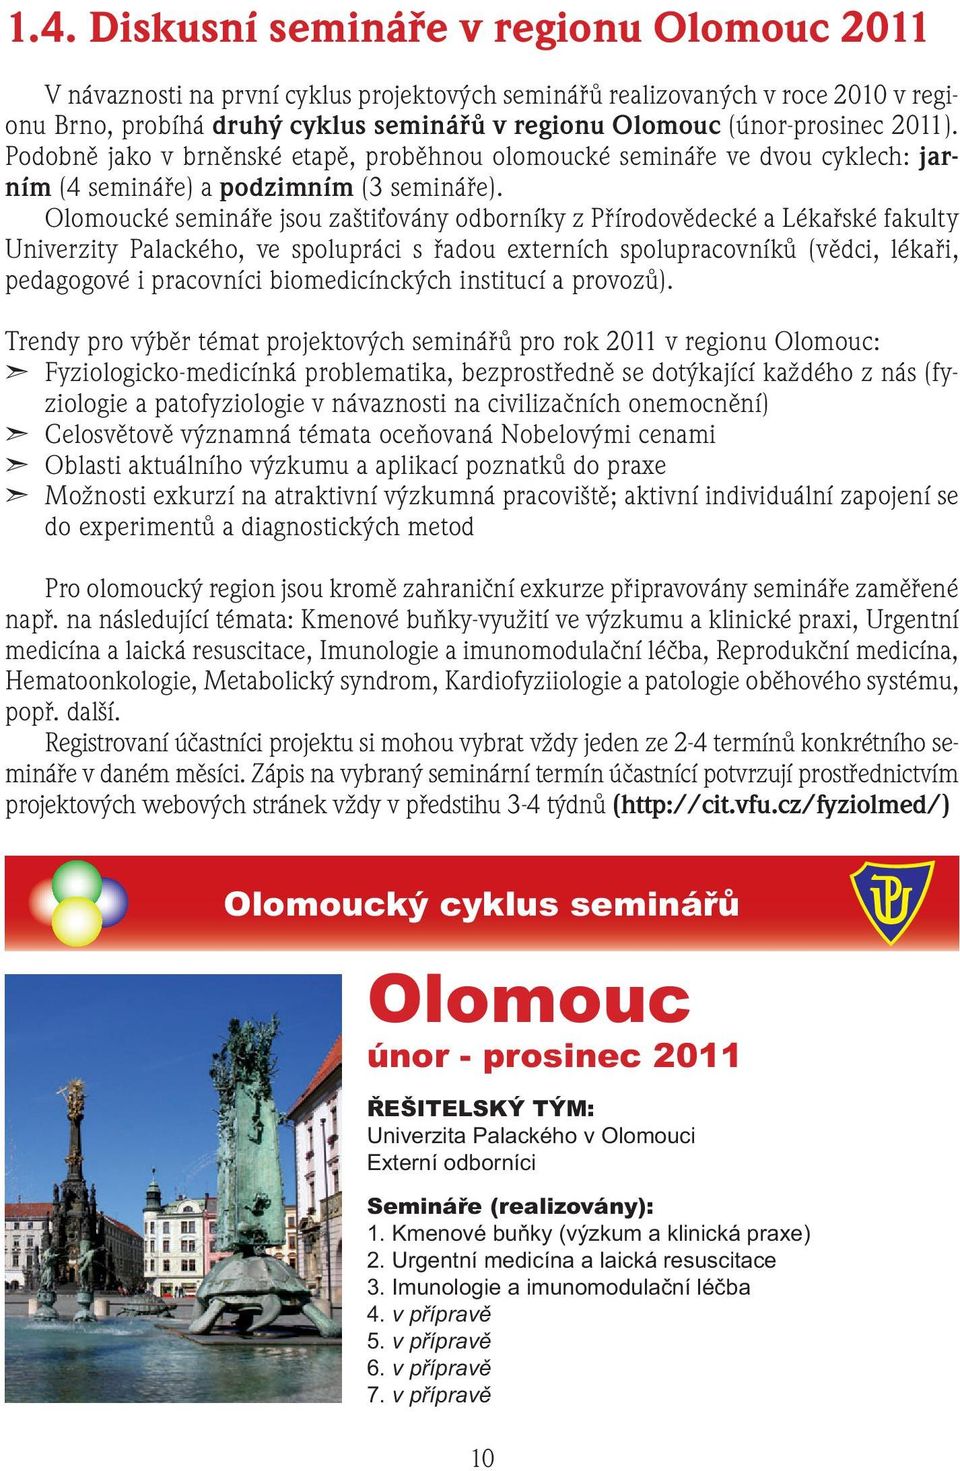 Olomoucké semináře jsou zaštiťovány odborníky z Přírodovědecké a Lékařské fakulty Univerzity Palackého, ve spolupráci s řadou externích spolupracovníků (vědci, lékaři, pedagogové i pracovníci